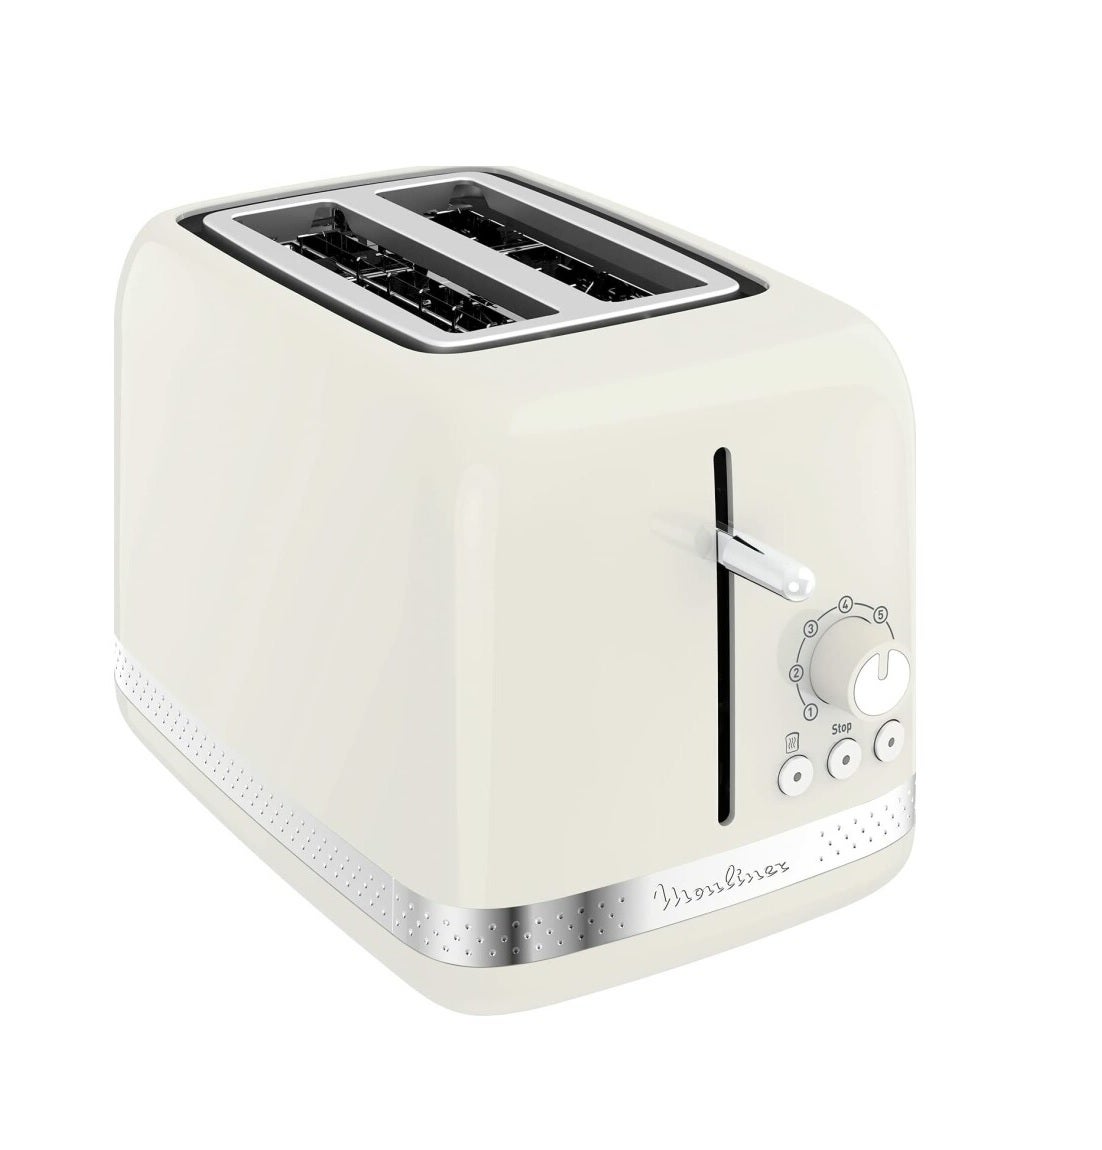 Moulinex LT300 Toaster